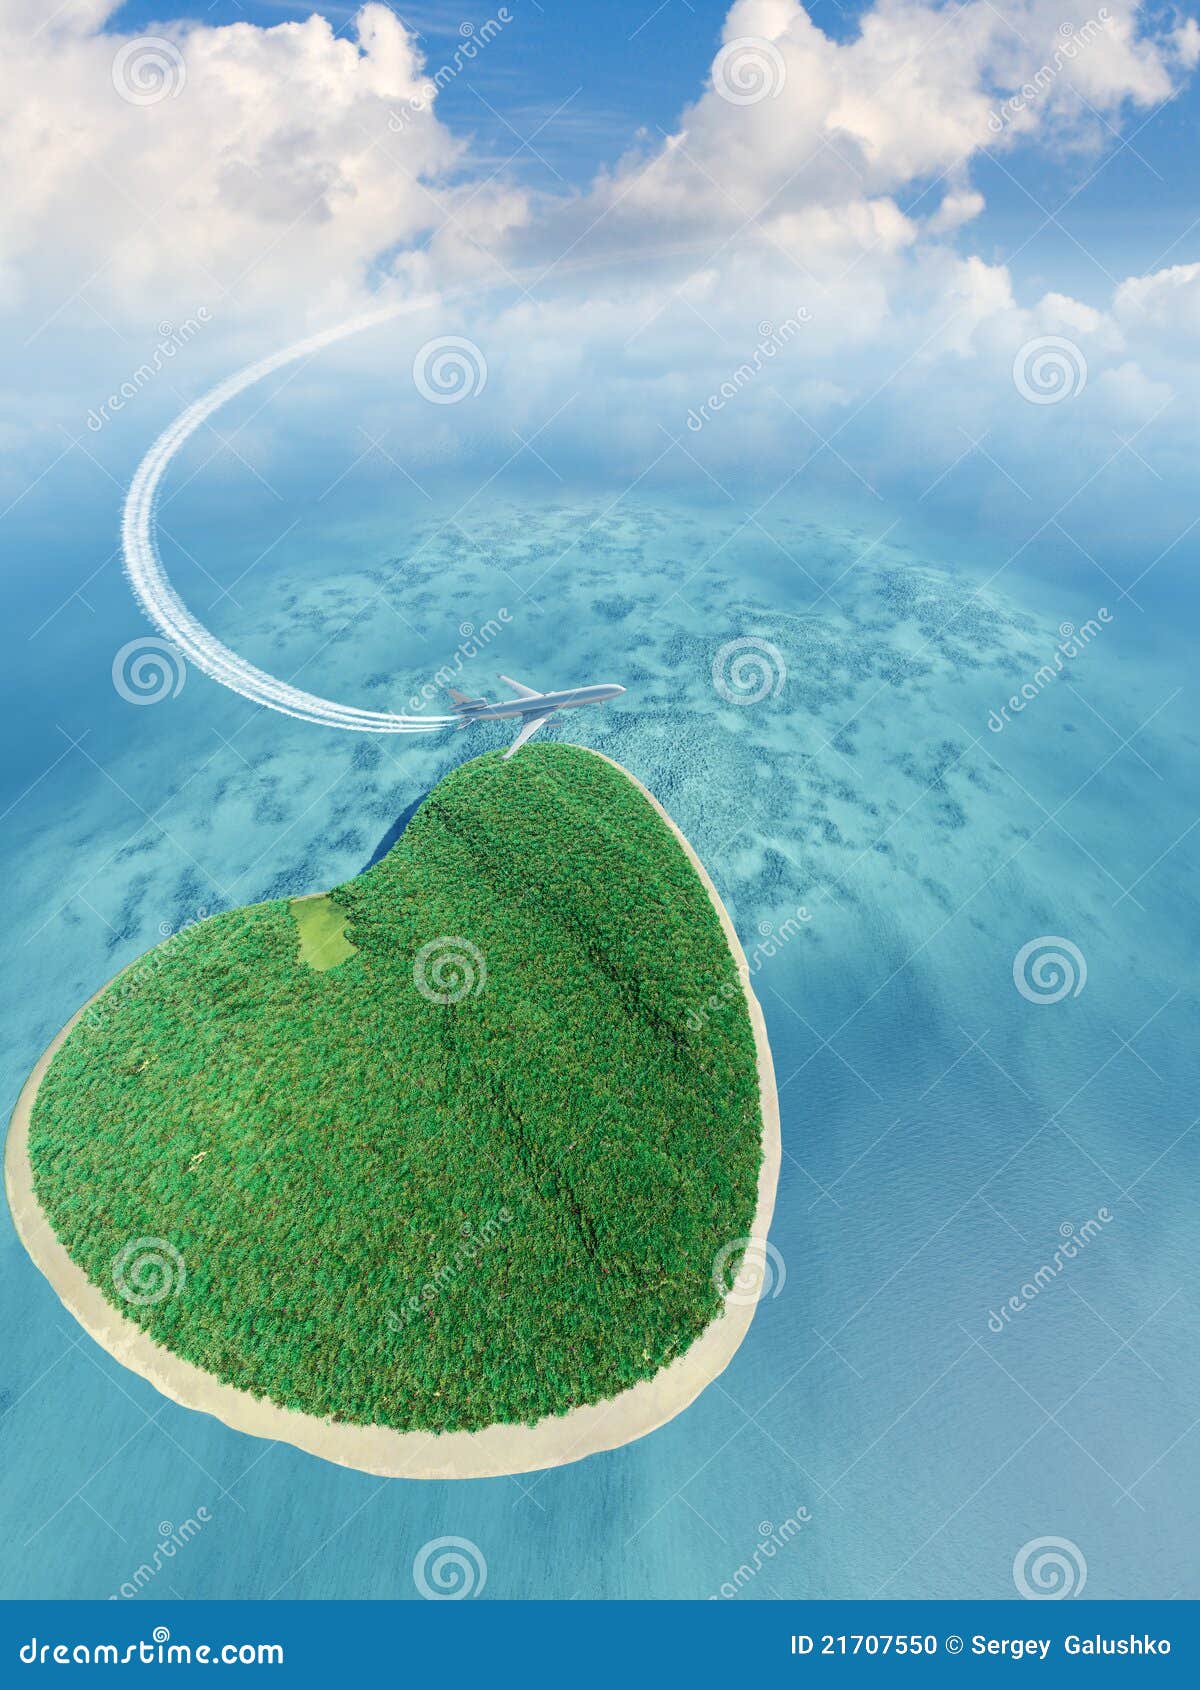 Остров вид сверху в форме сердца